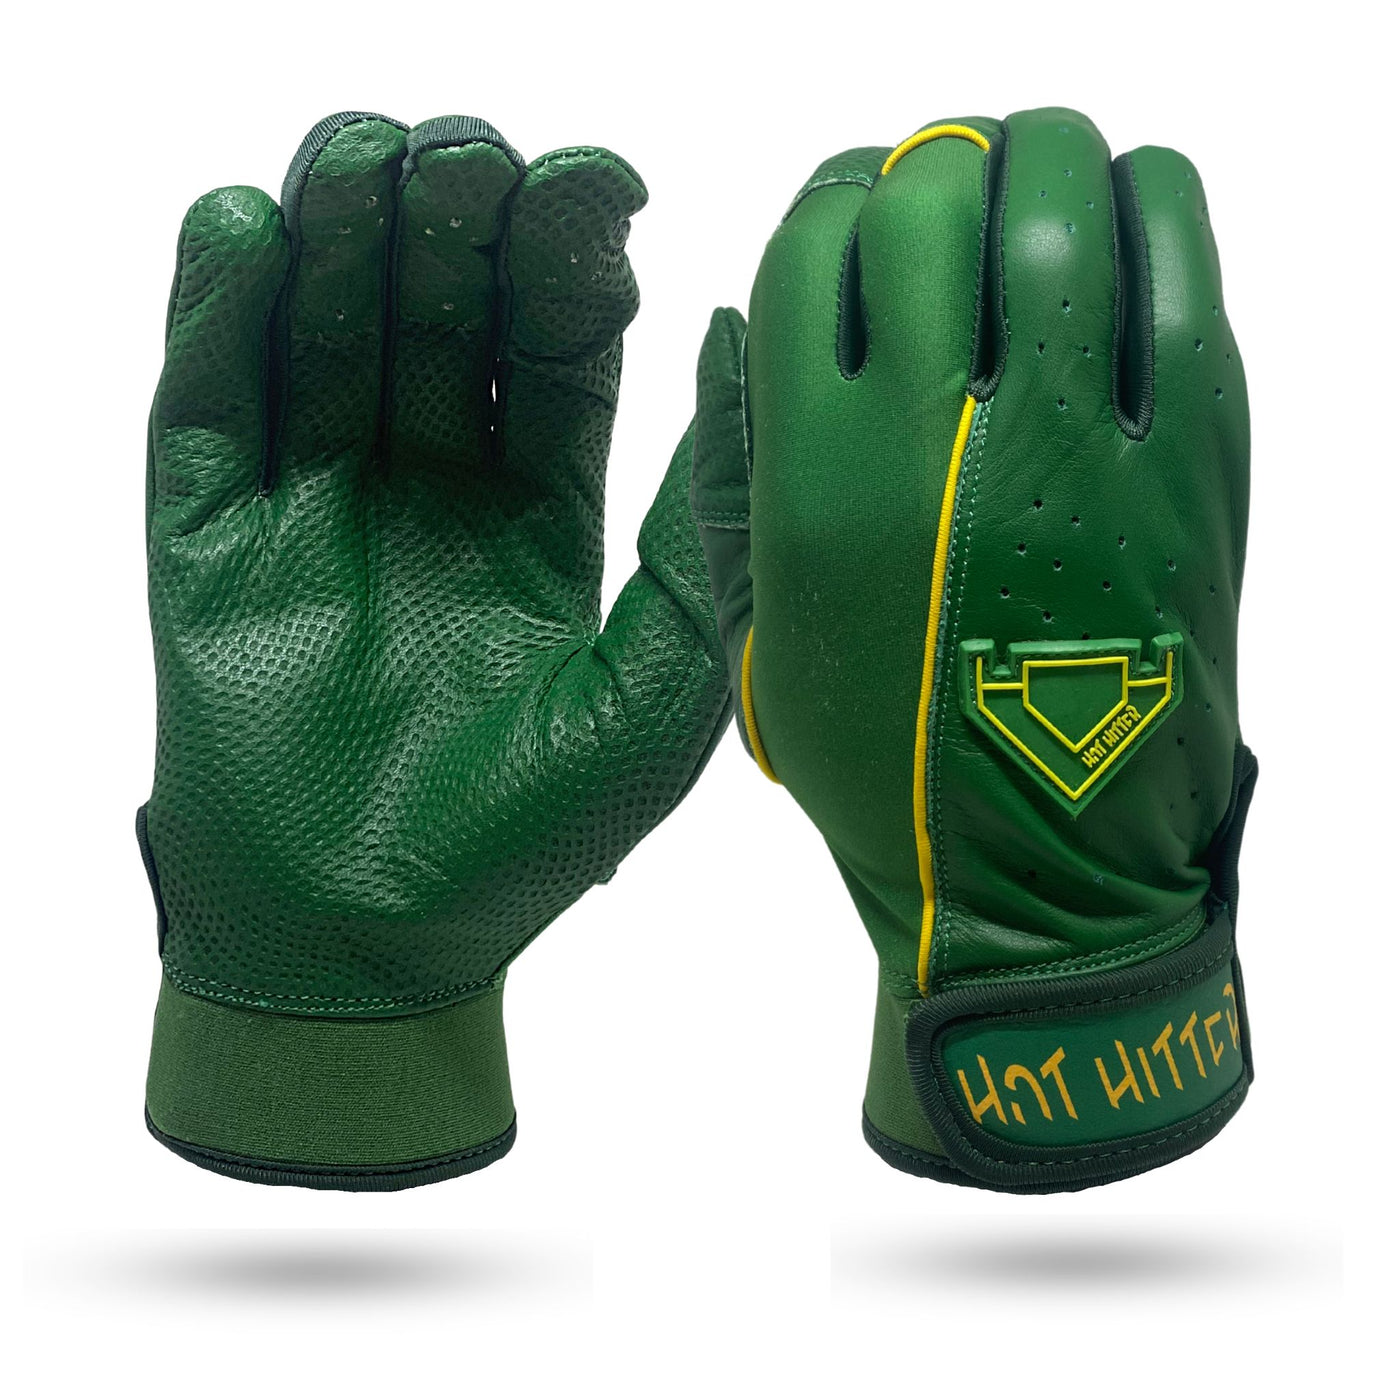 Extra Innings Batting Gloves Dark Green & Gold